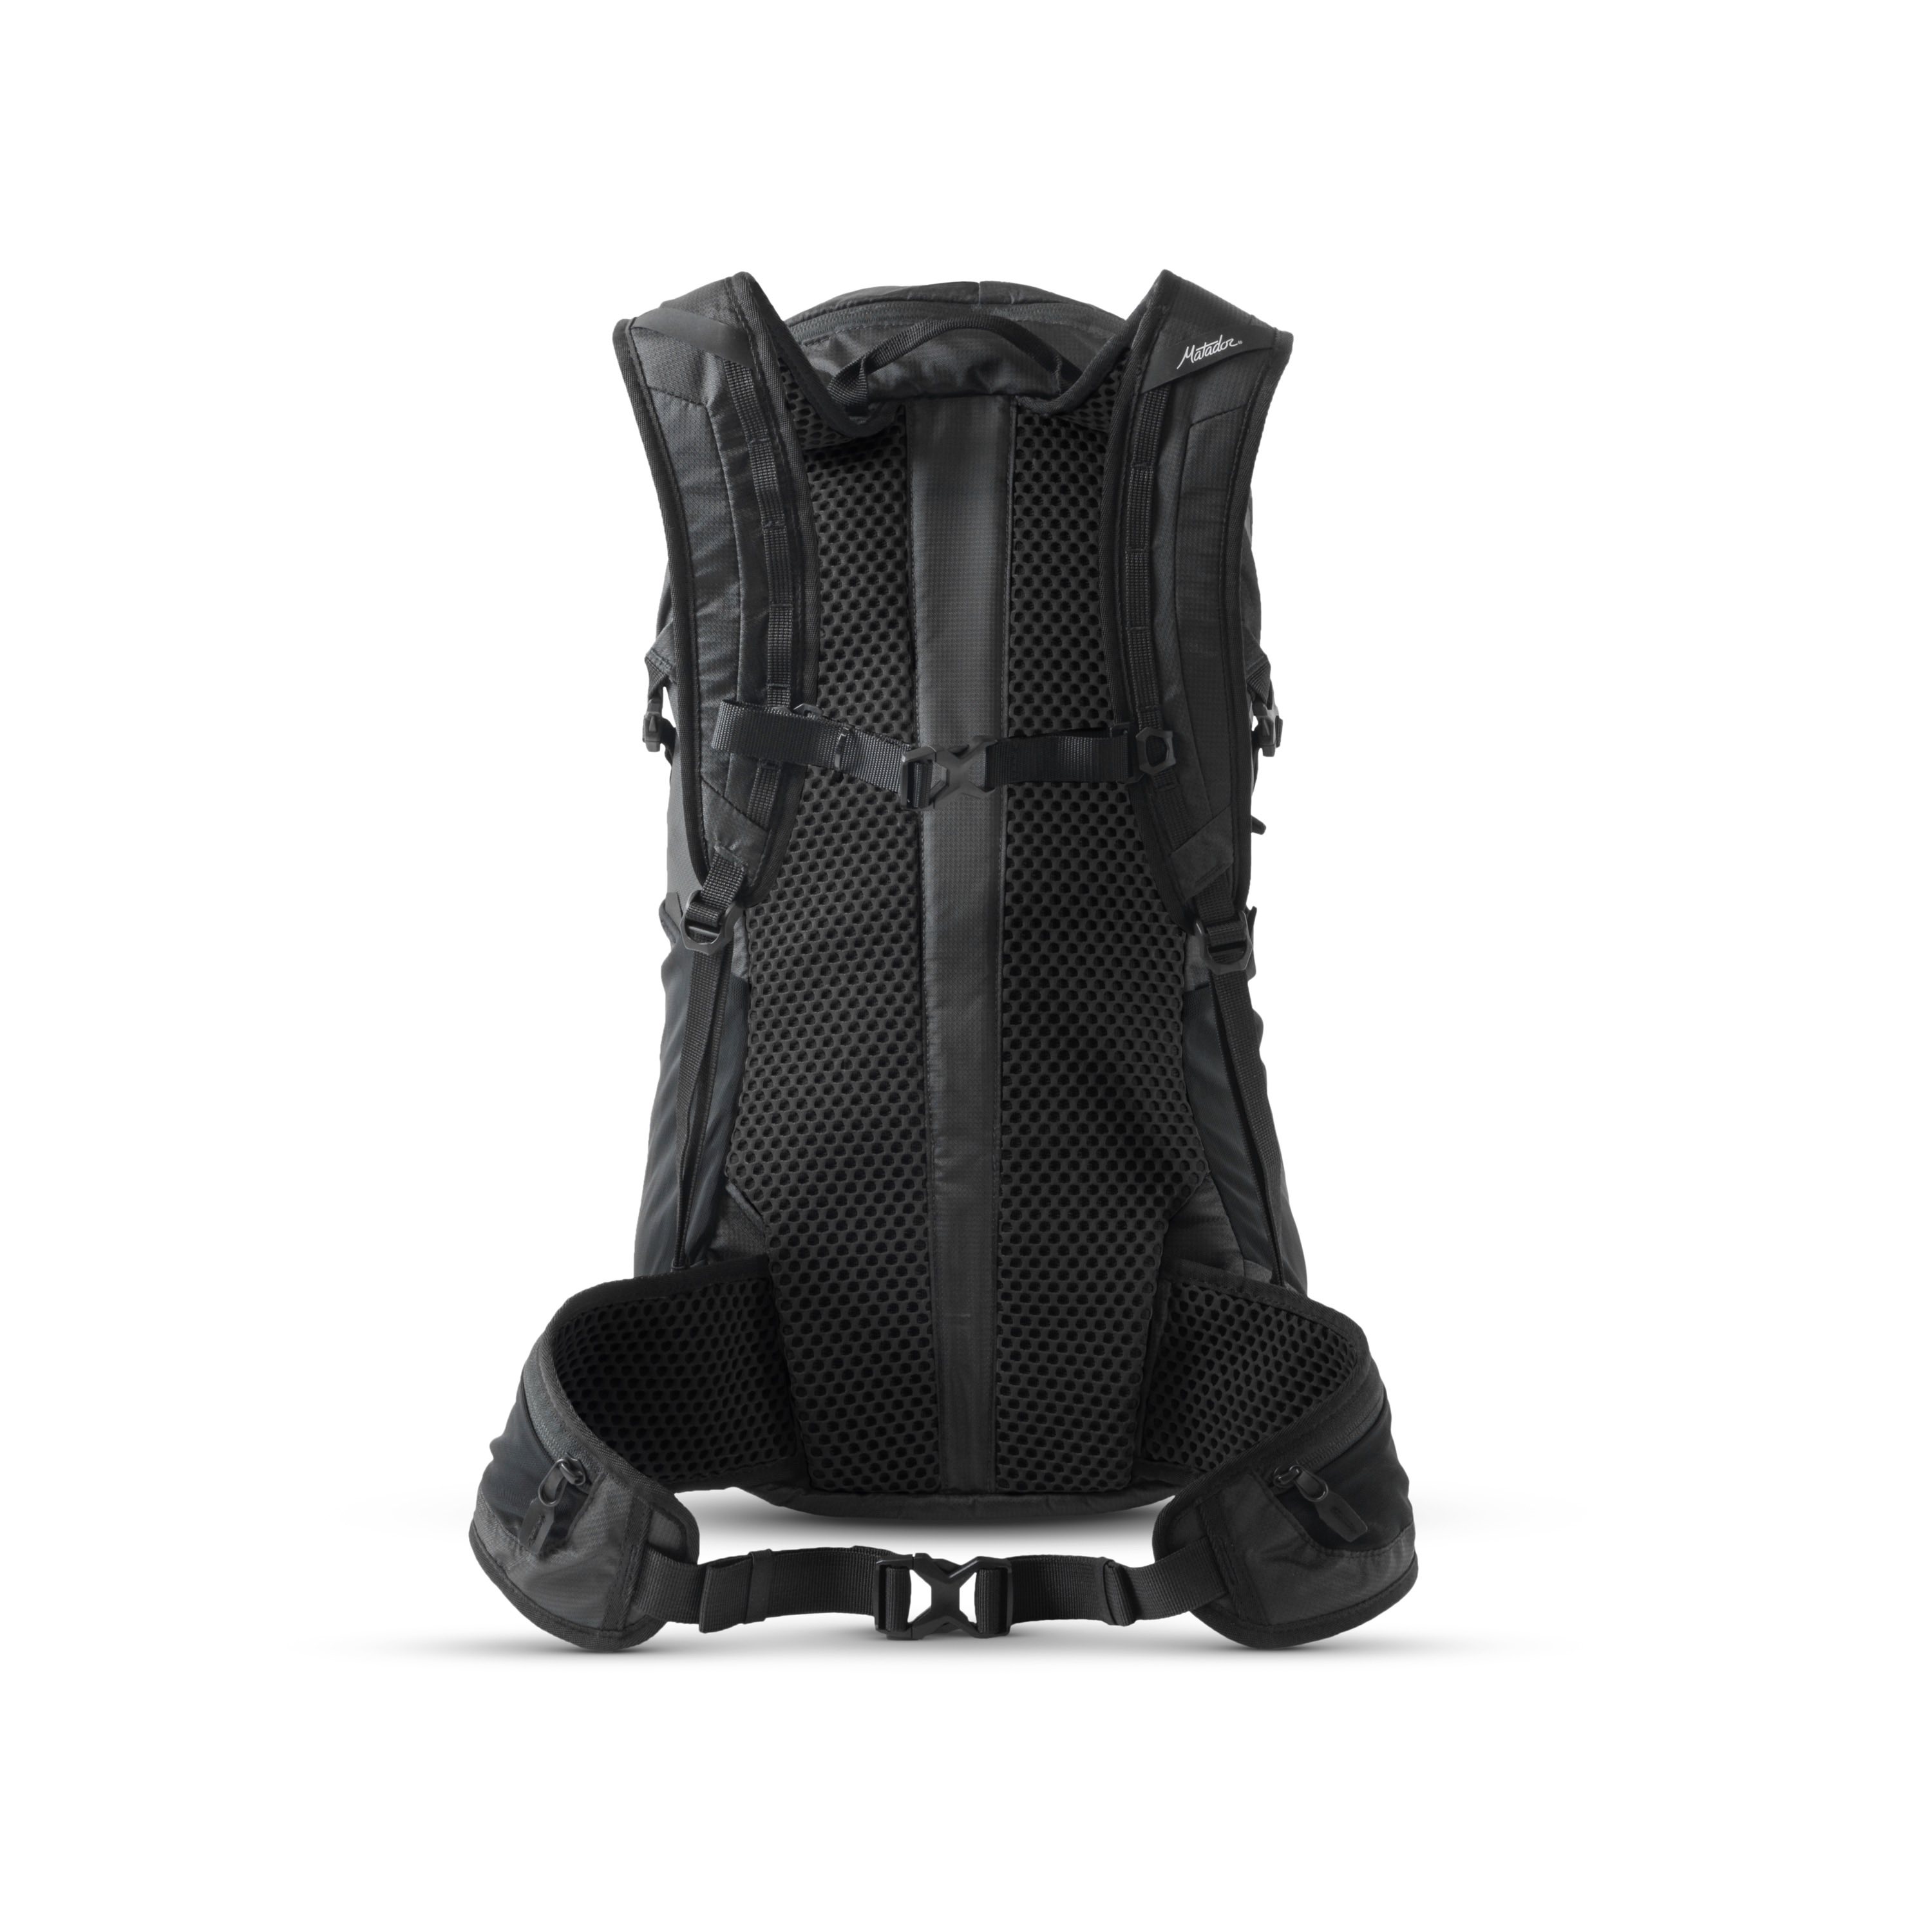 Matador Beast28 Ultralight Technical Backpack